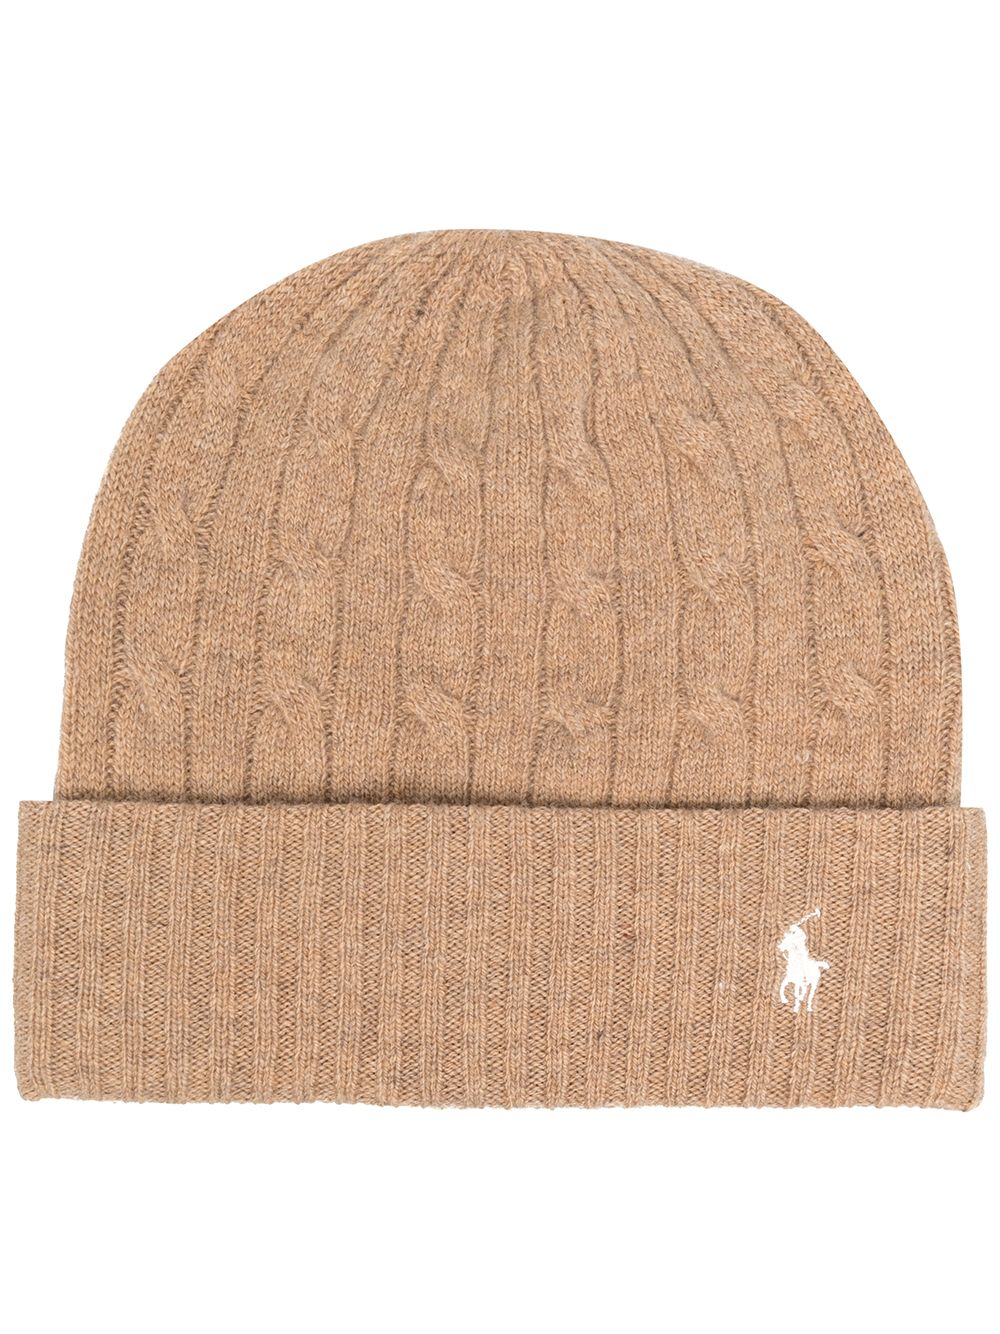 фото Polo ralph lauren шапка бини с вышитым логотипом